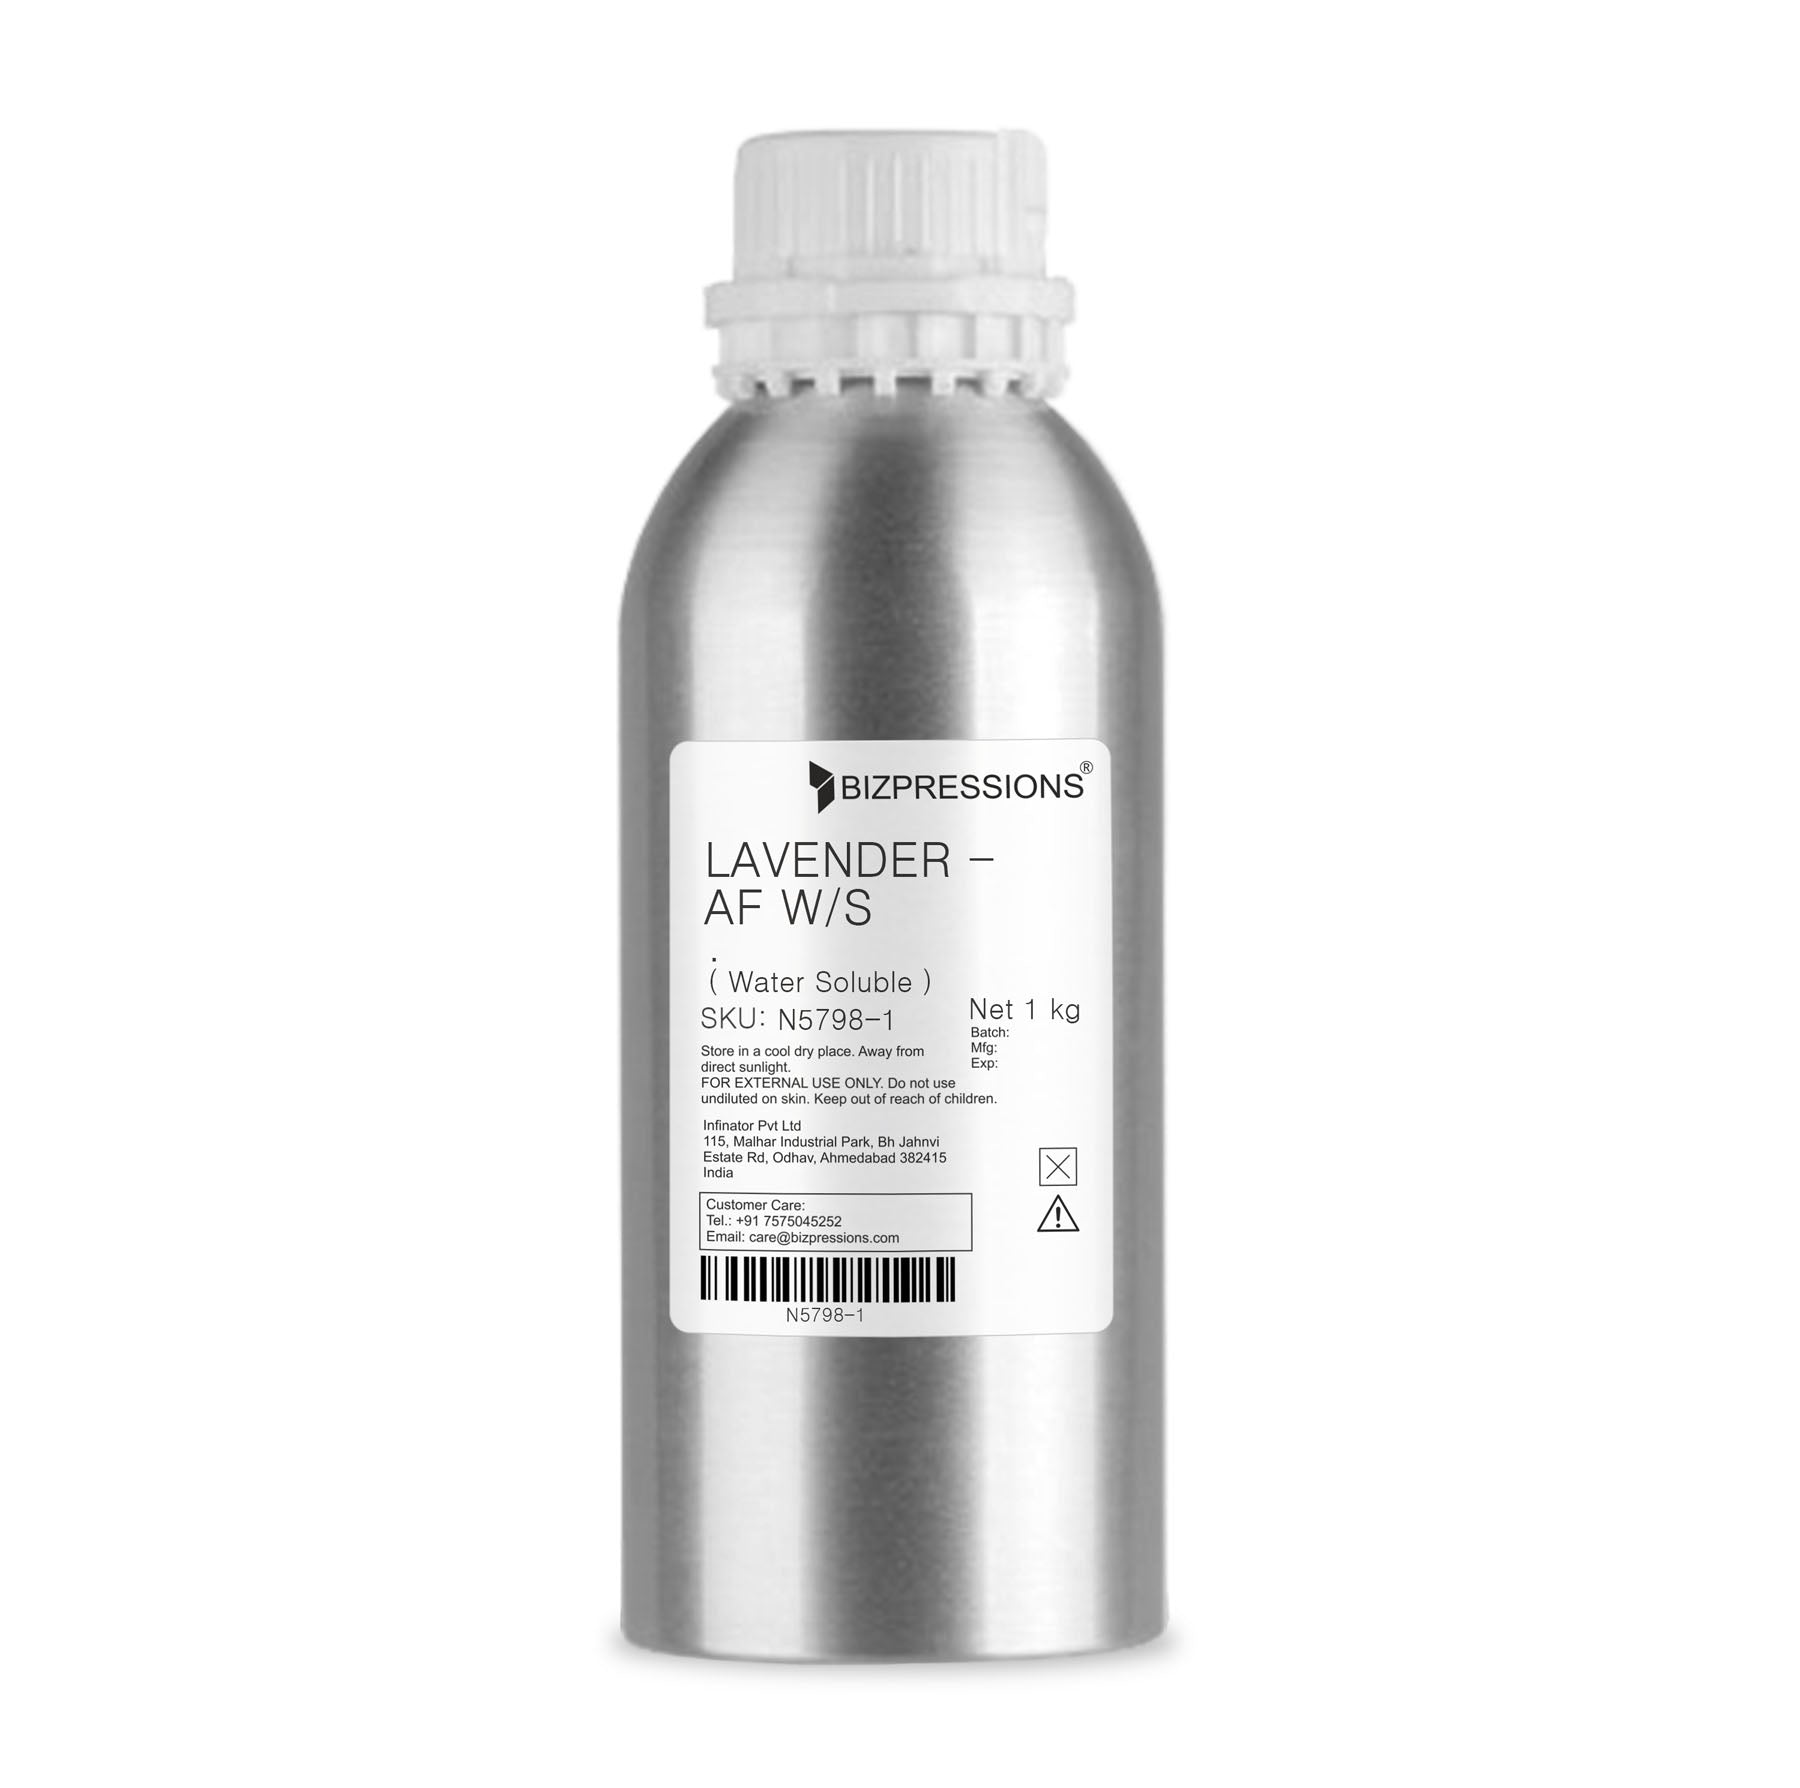 LAVENDER - AF W/S - Fragrance ( Water Soluble ) - 1 kg